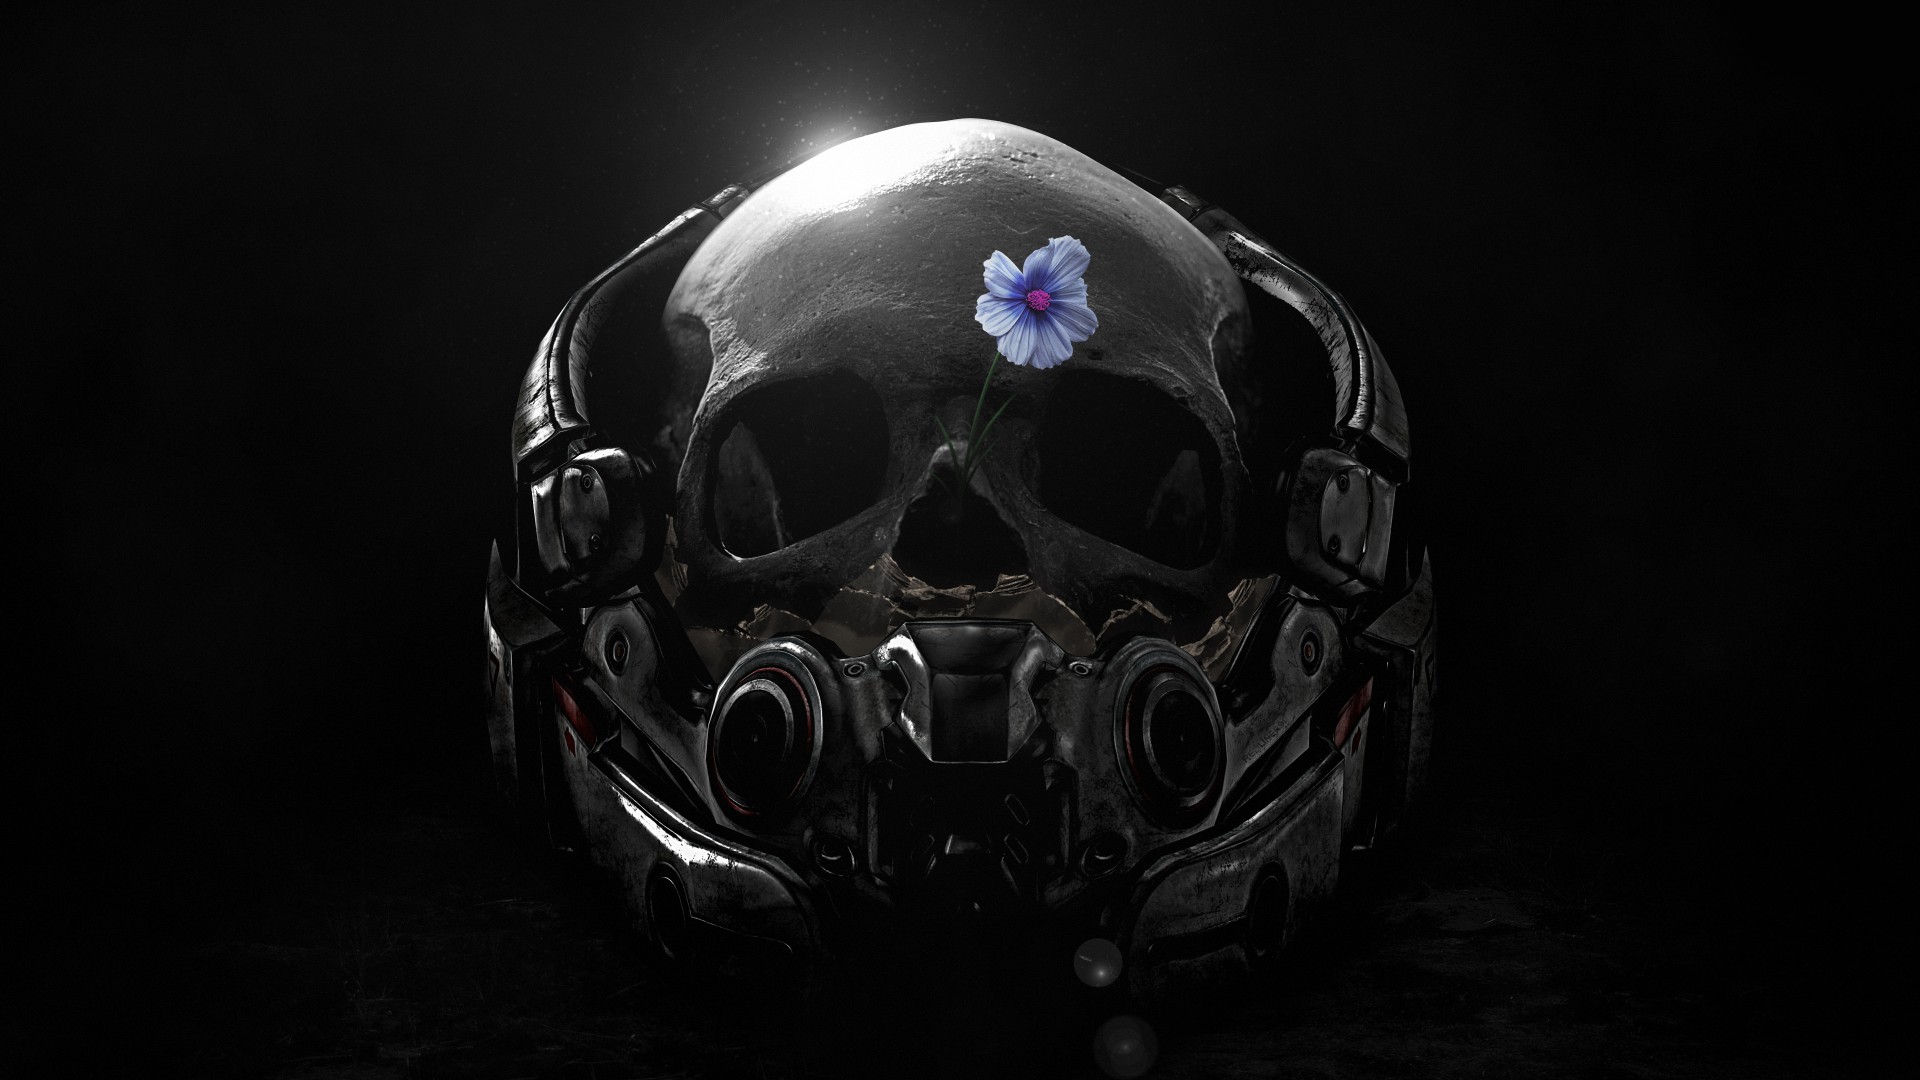 Mass Effect Andromeda Video Games Artwork Helmet Skull Flowers Black 1920x1080